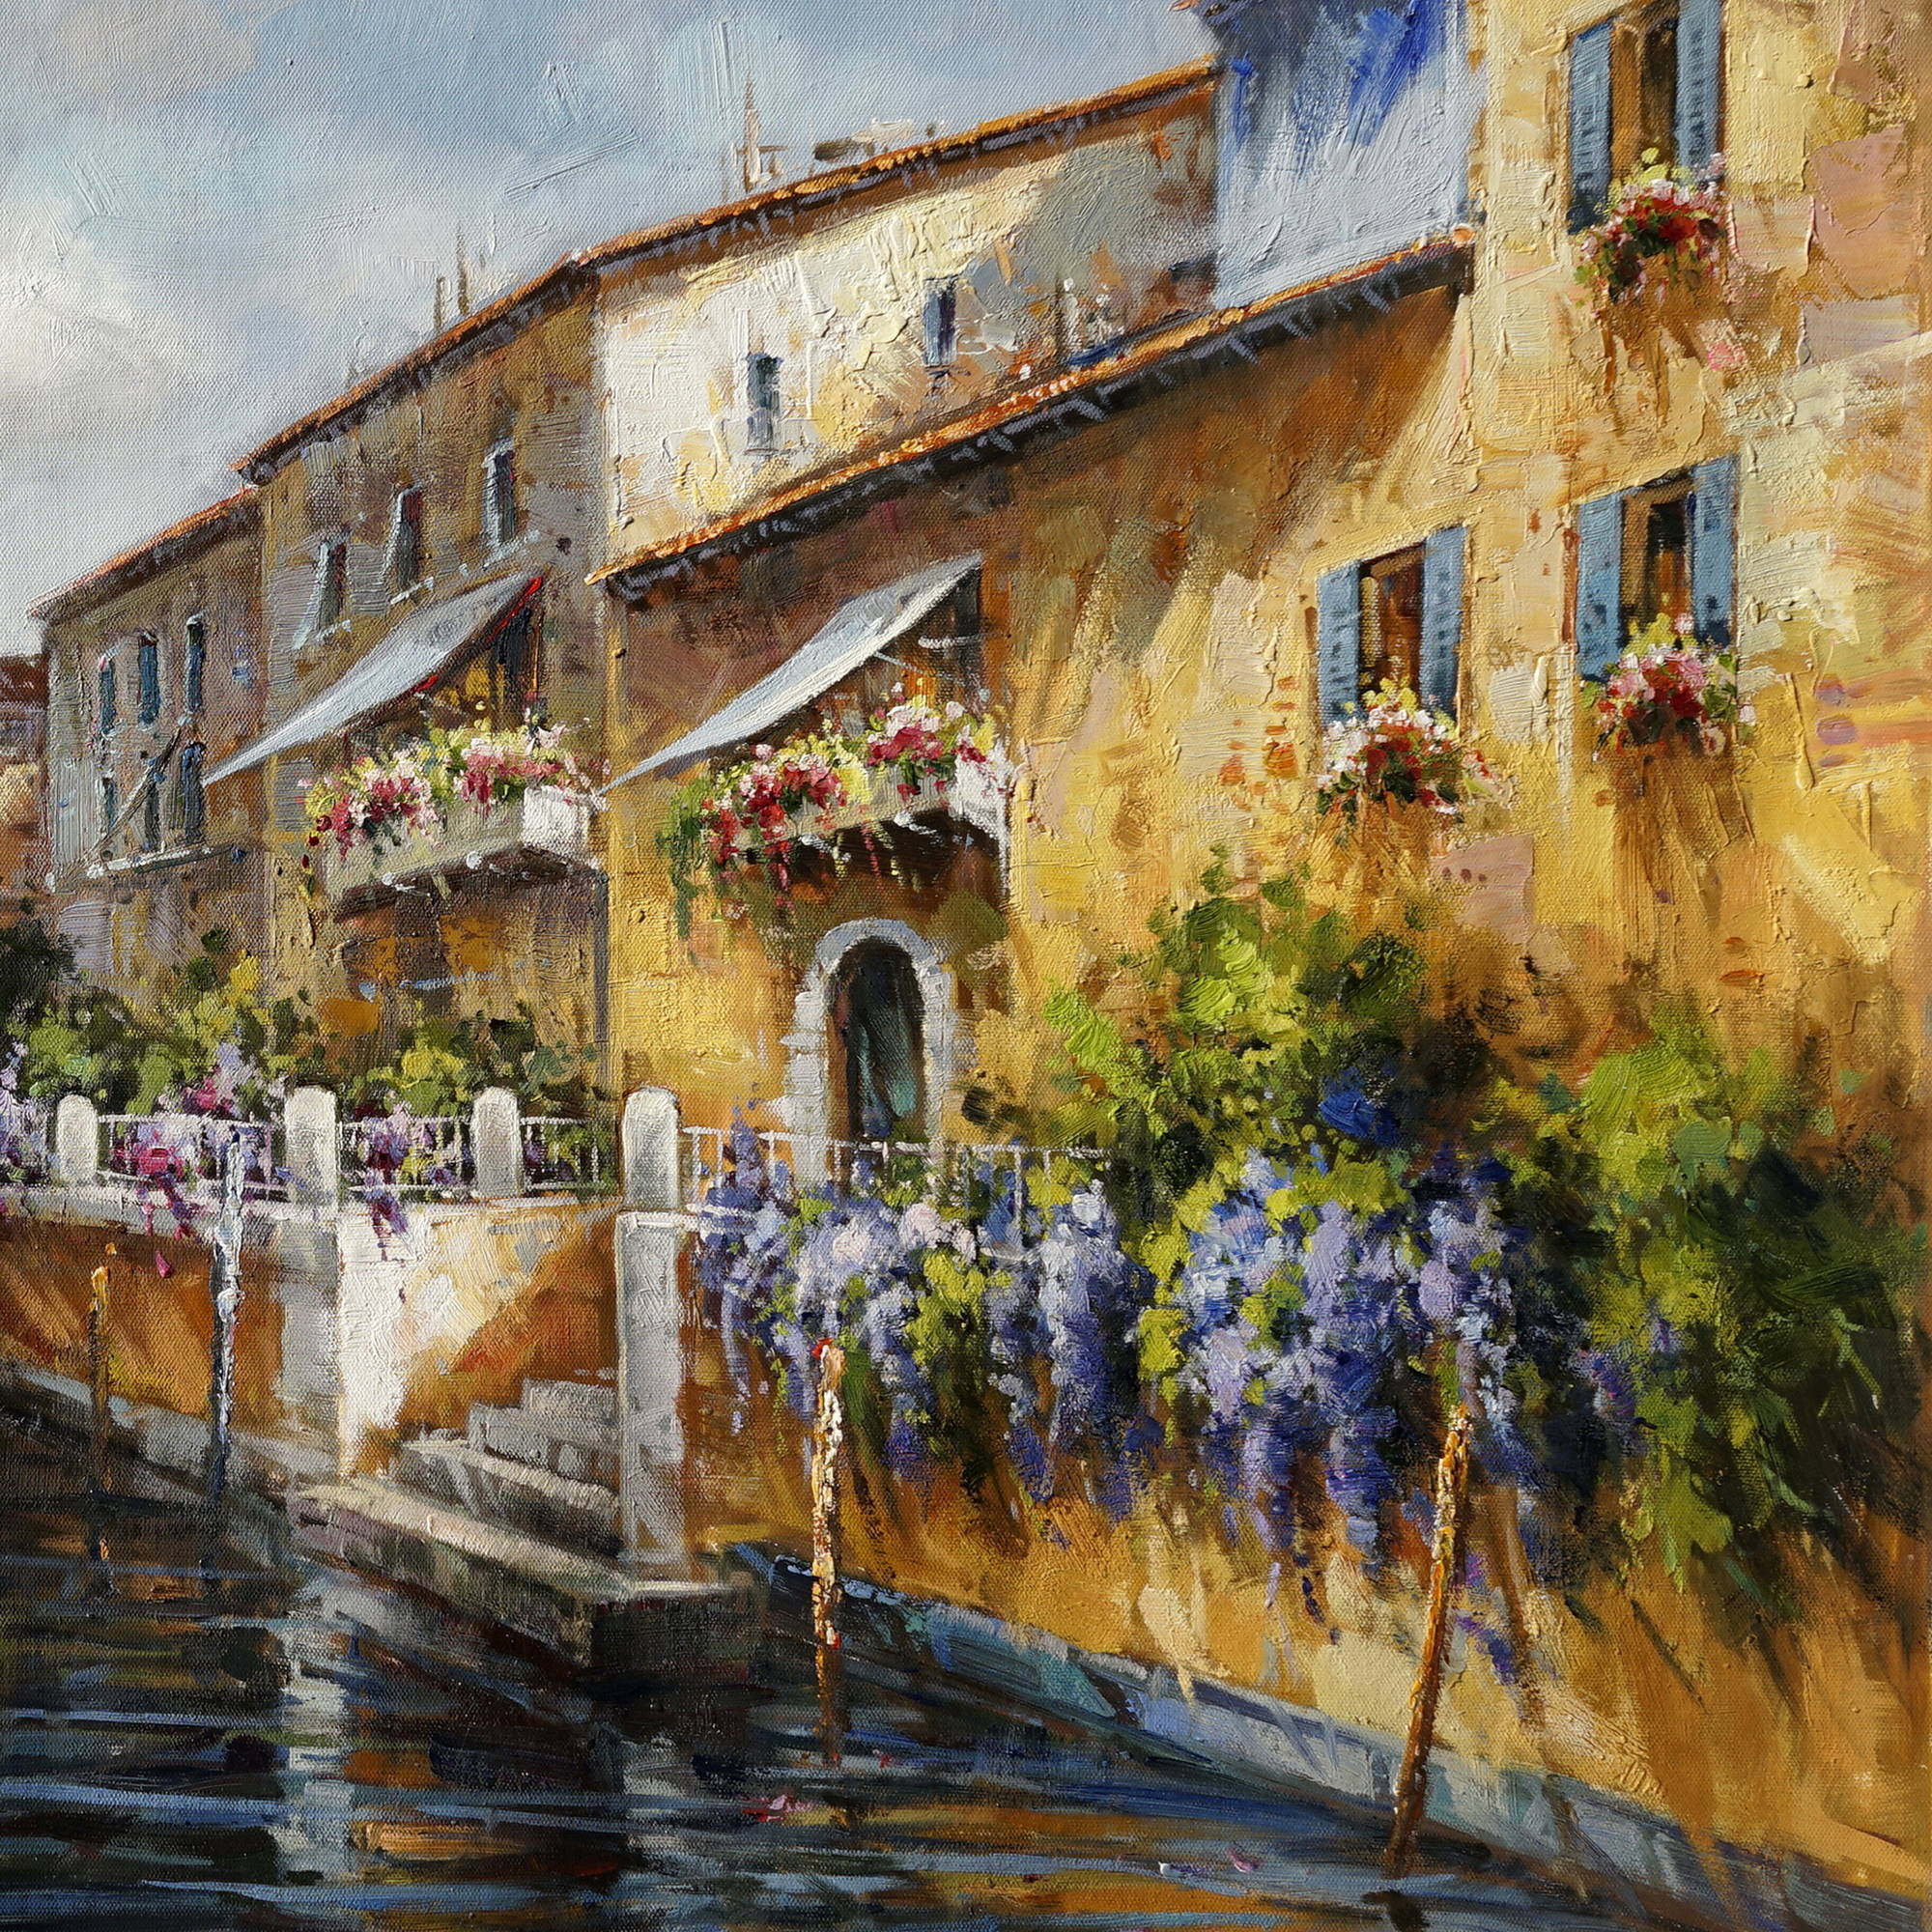 Dipinto a mano Canale di Venezia Gondole 90x180cm